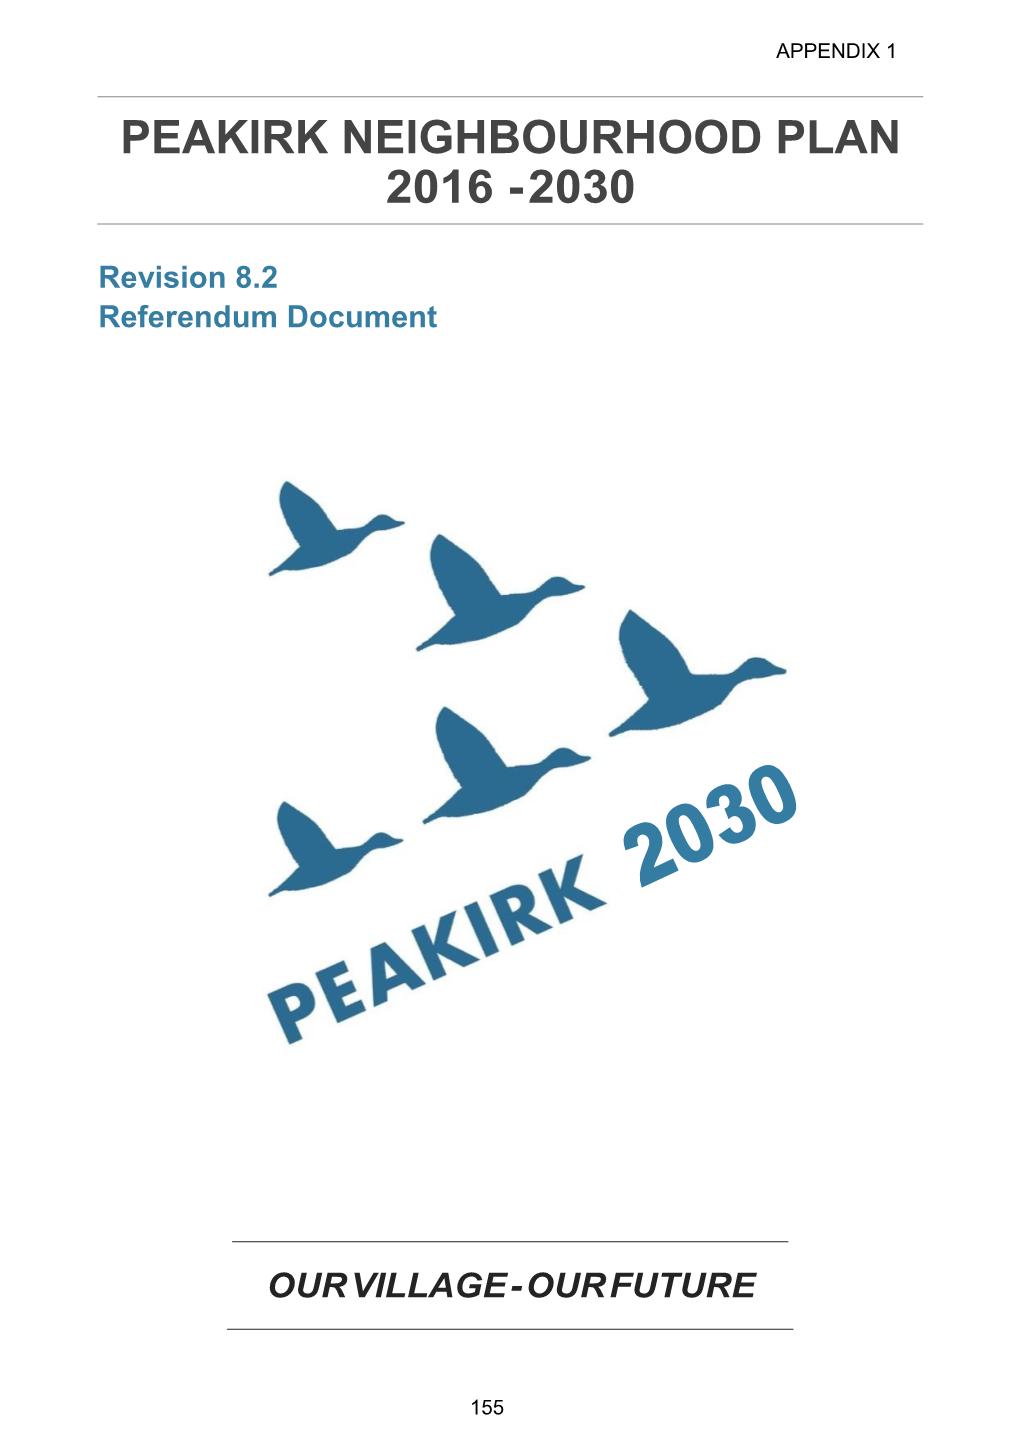 Peakirk Neighbourhood Plan 2016 - 2030